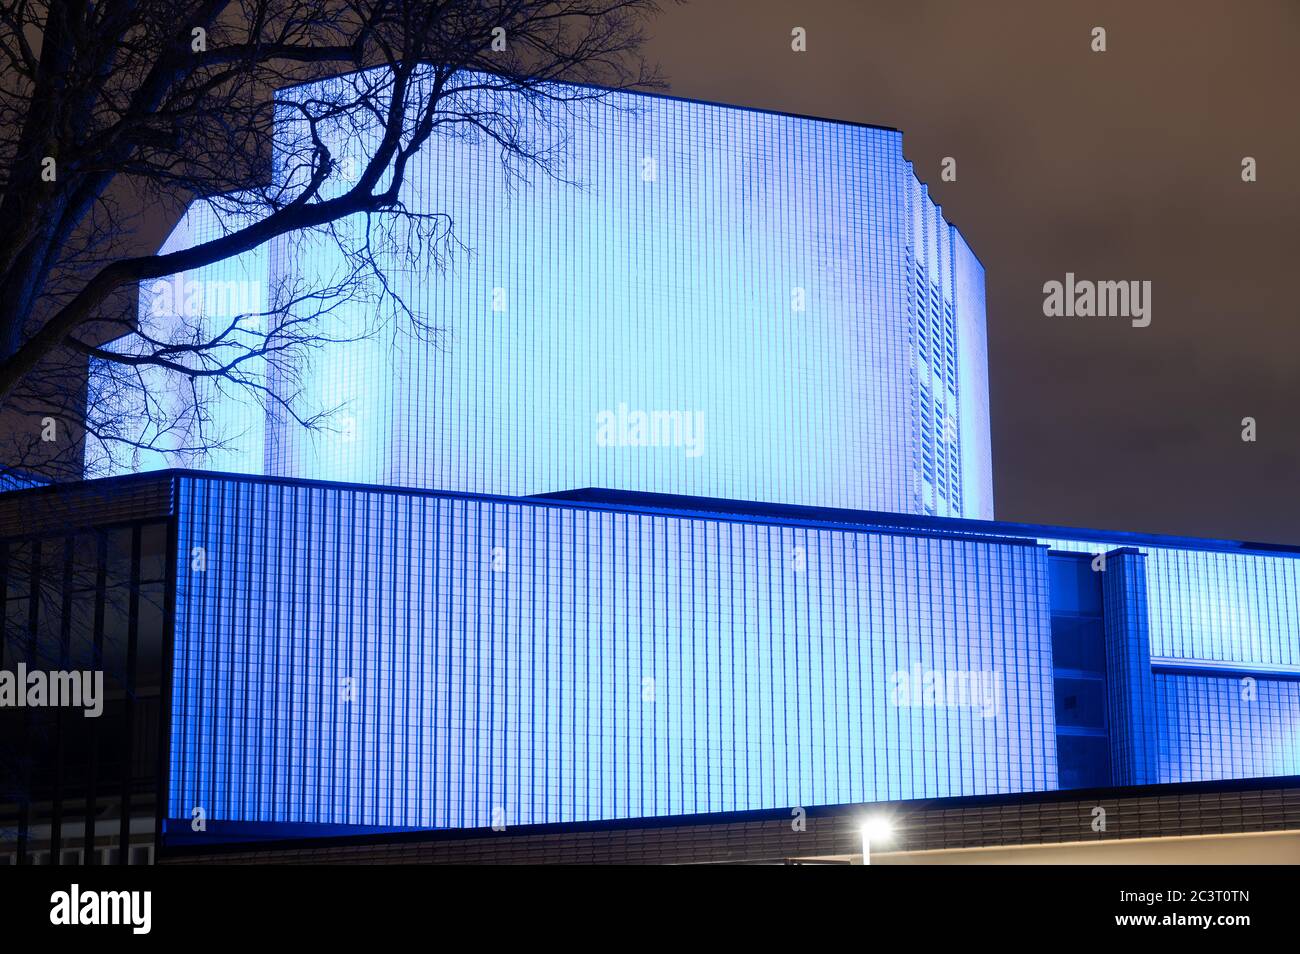 Illuminated Helsinki city theater building in Kallio Stock Photo - Alamy